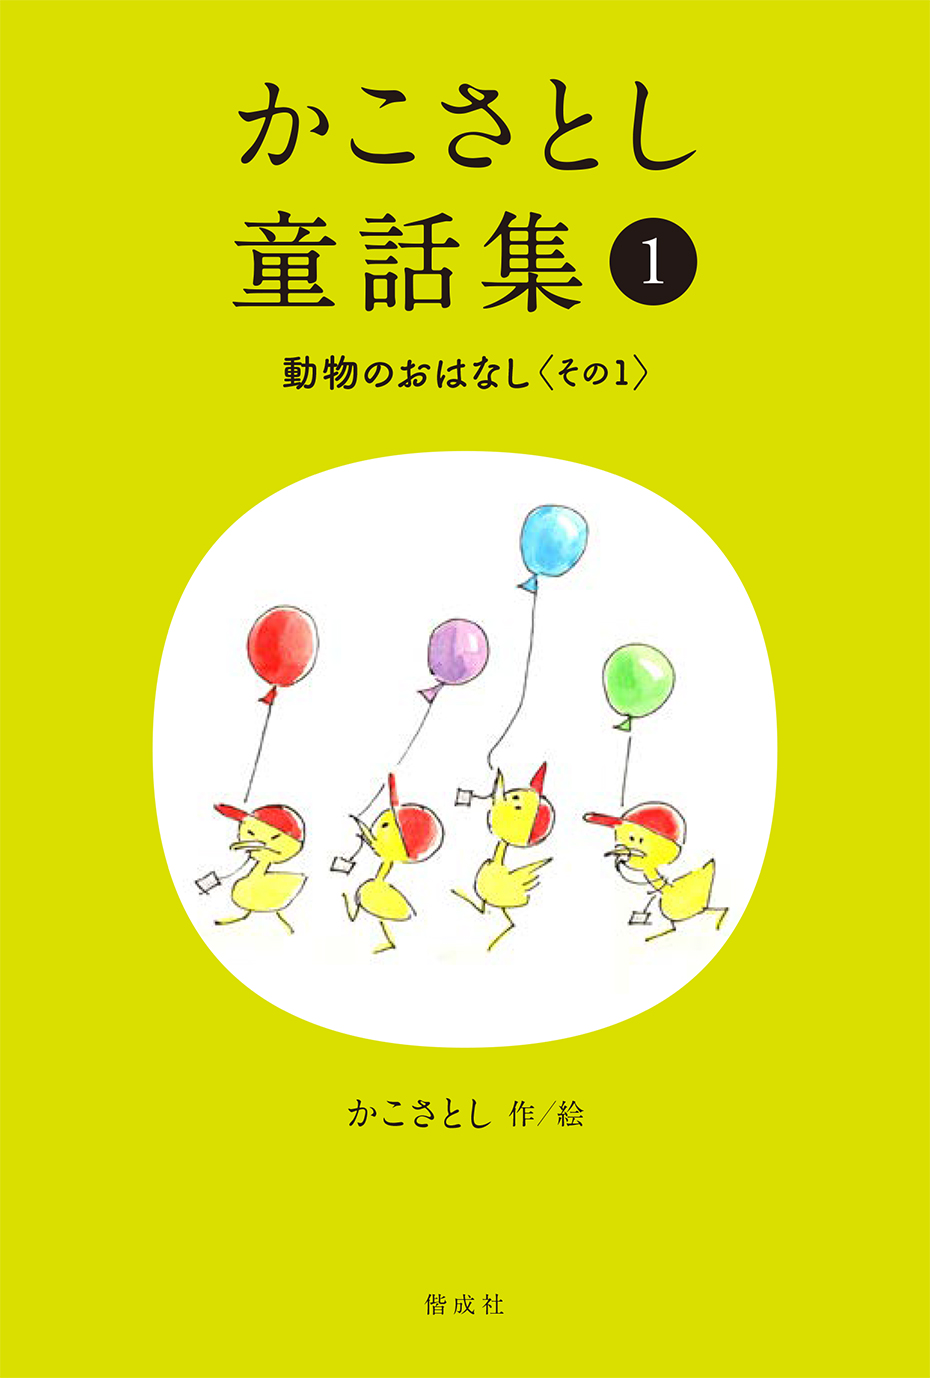 1/6 福井新聞で「かこさとし童話集」が紹介されました